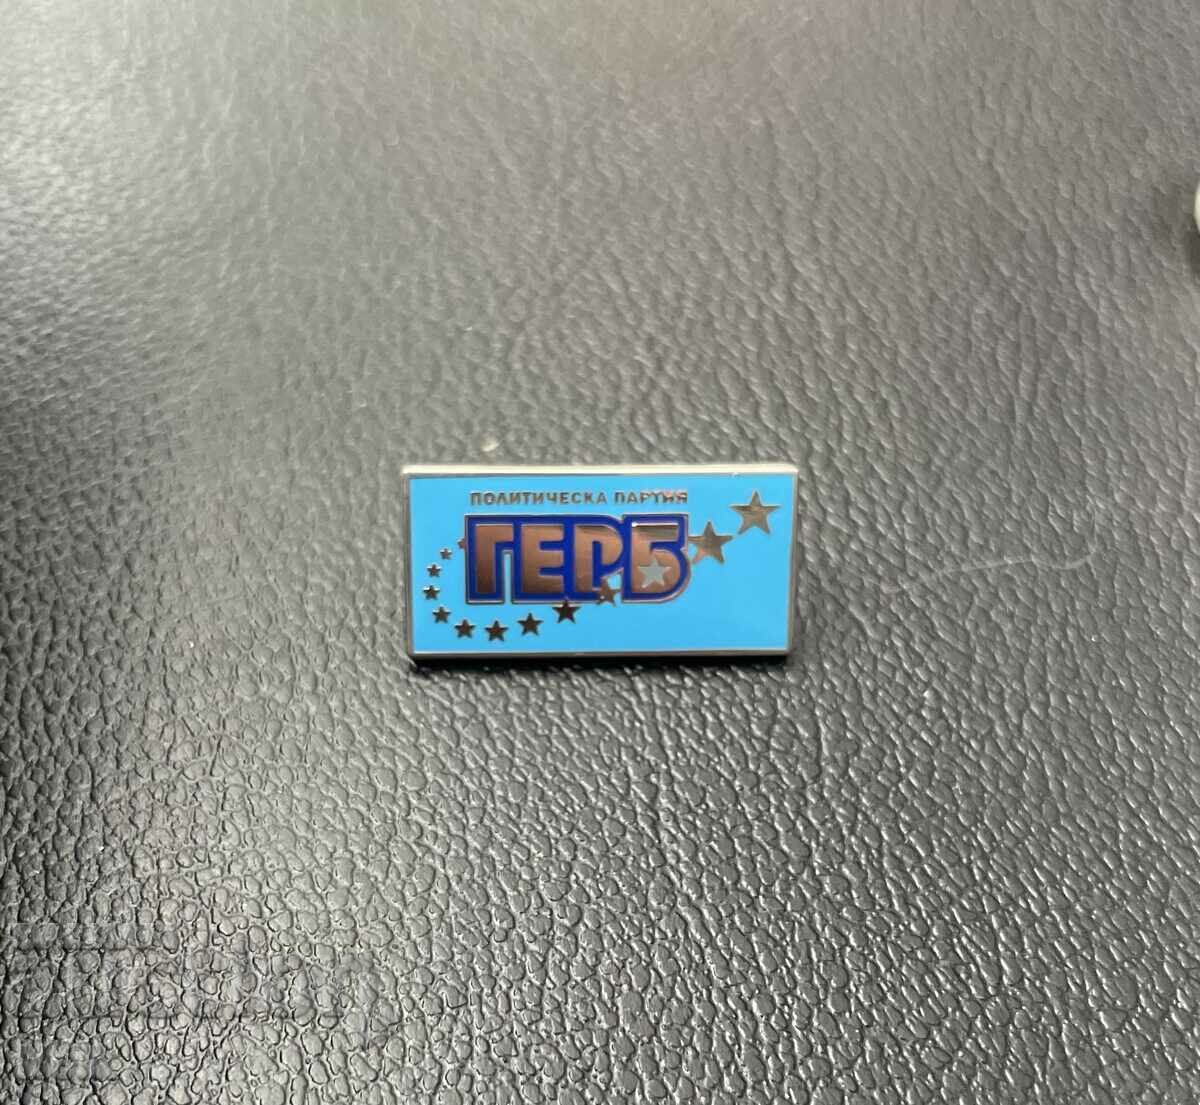 PP GERB - badge